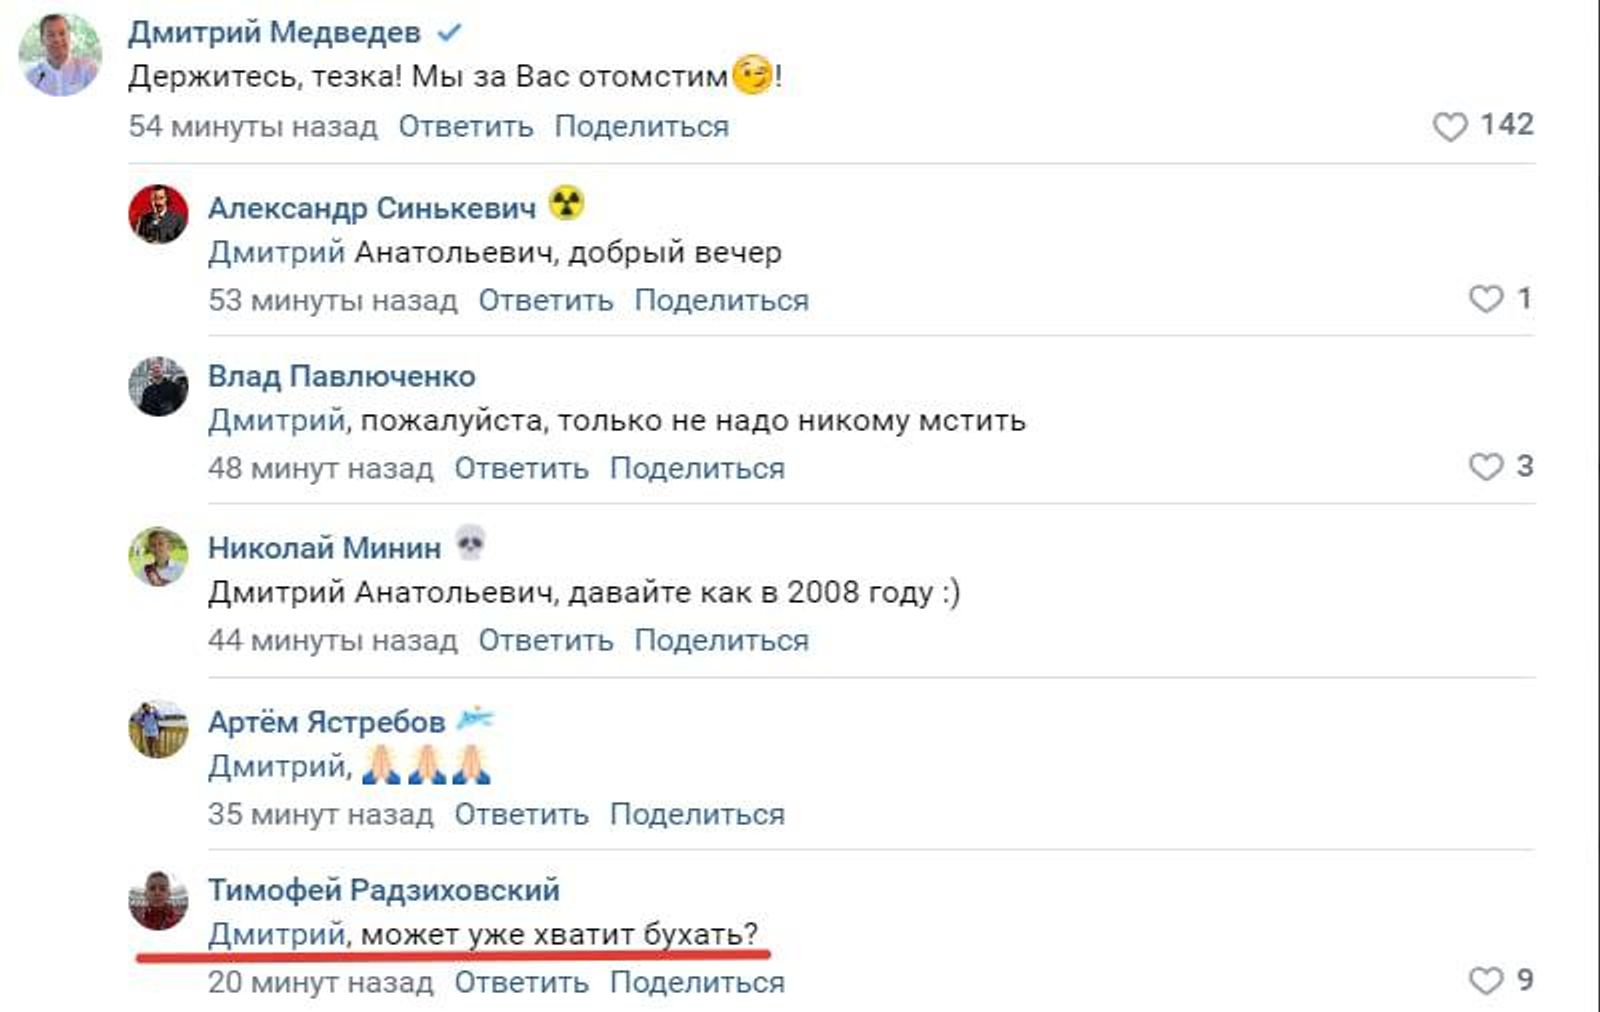 Россиянин ответил на комментарий Медведеву. После этого у него забрали сообщество во «ВКонтакте», а его коллегу задержали